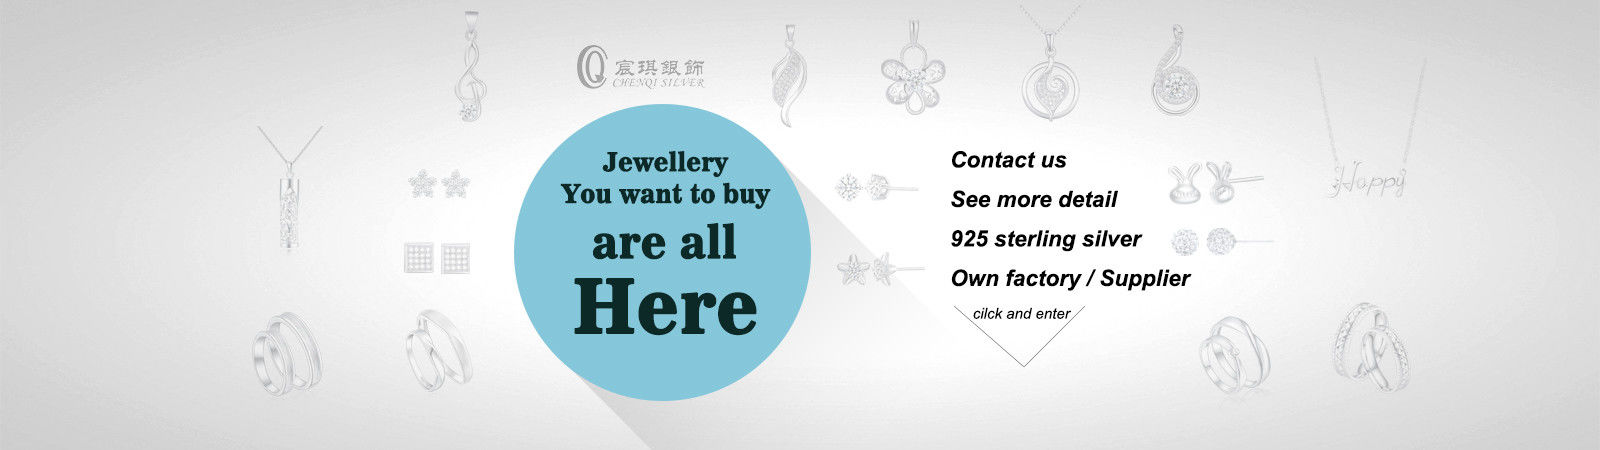 Cina terbaik Desain Perhiasan Baru penjualan